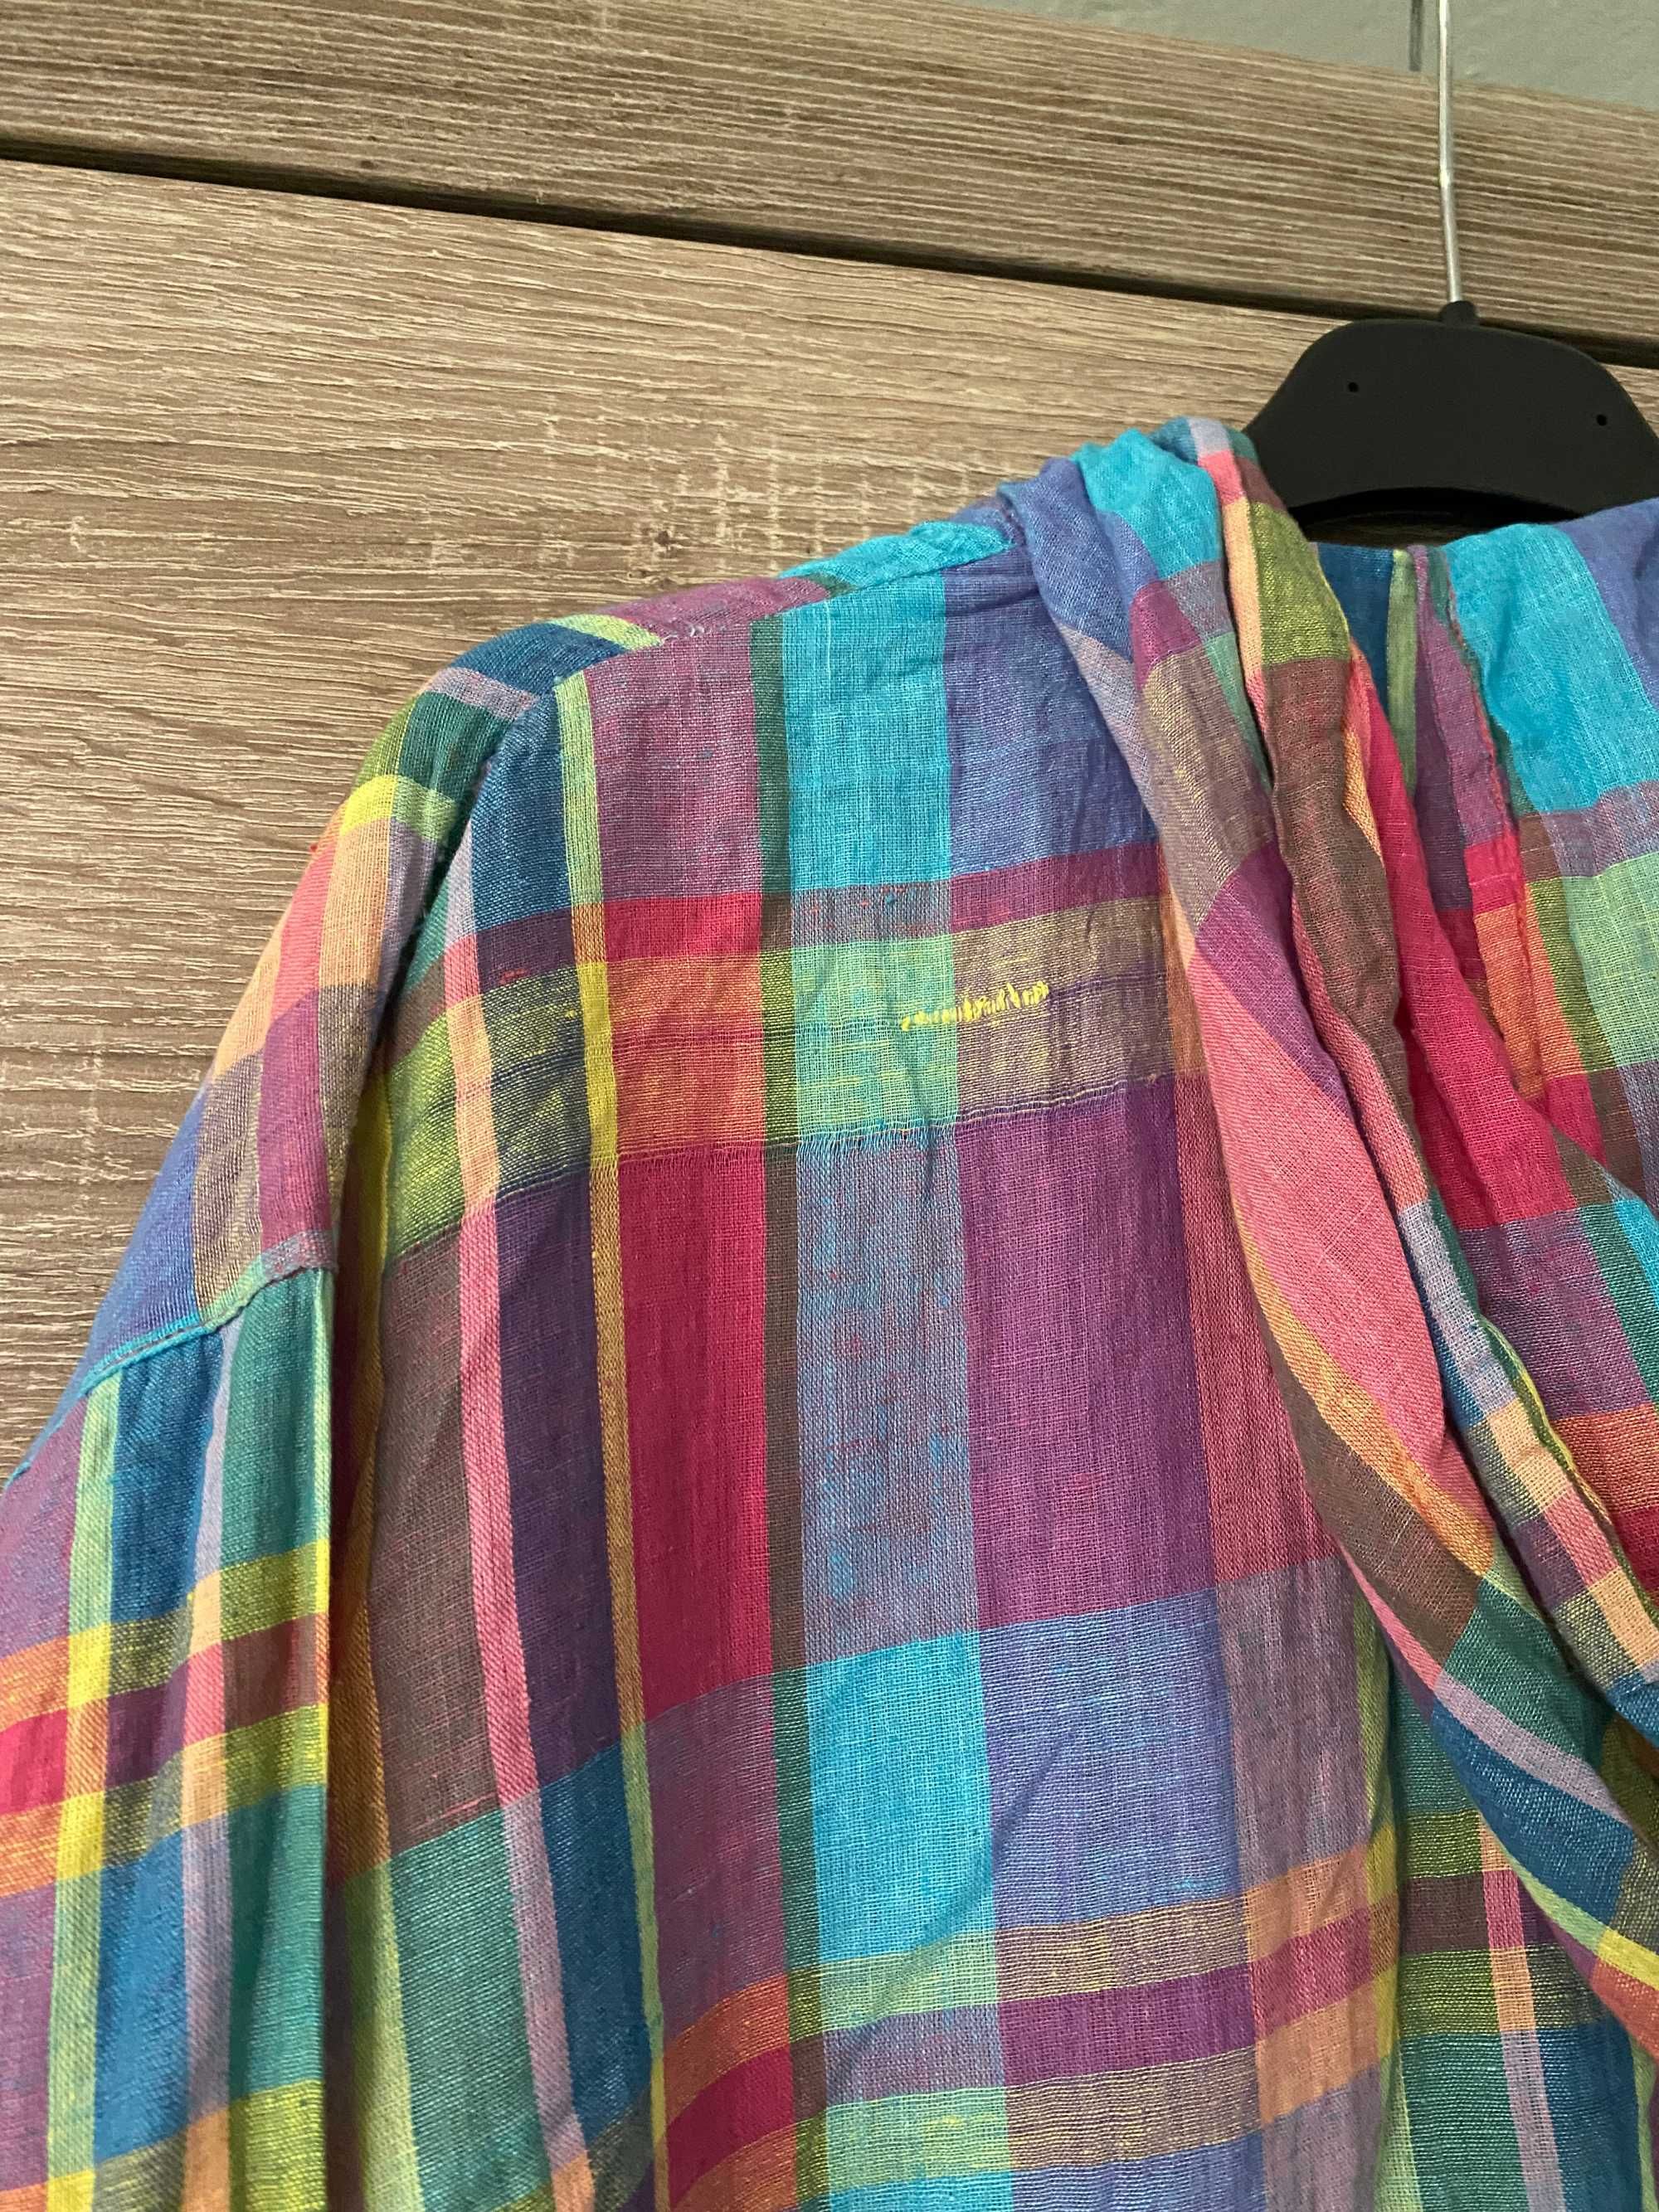 Kolorowa lekka kurtka w kratkę wiatrówka bluza S M